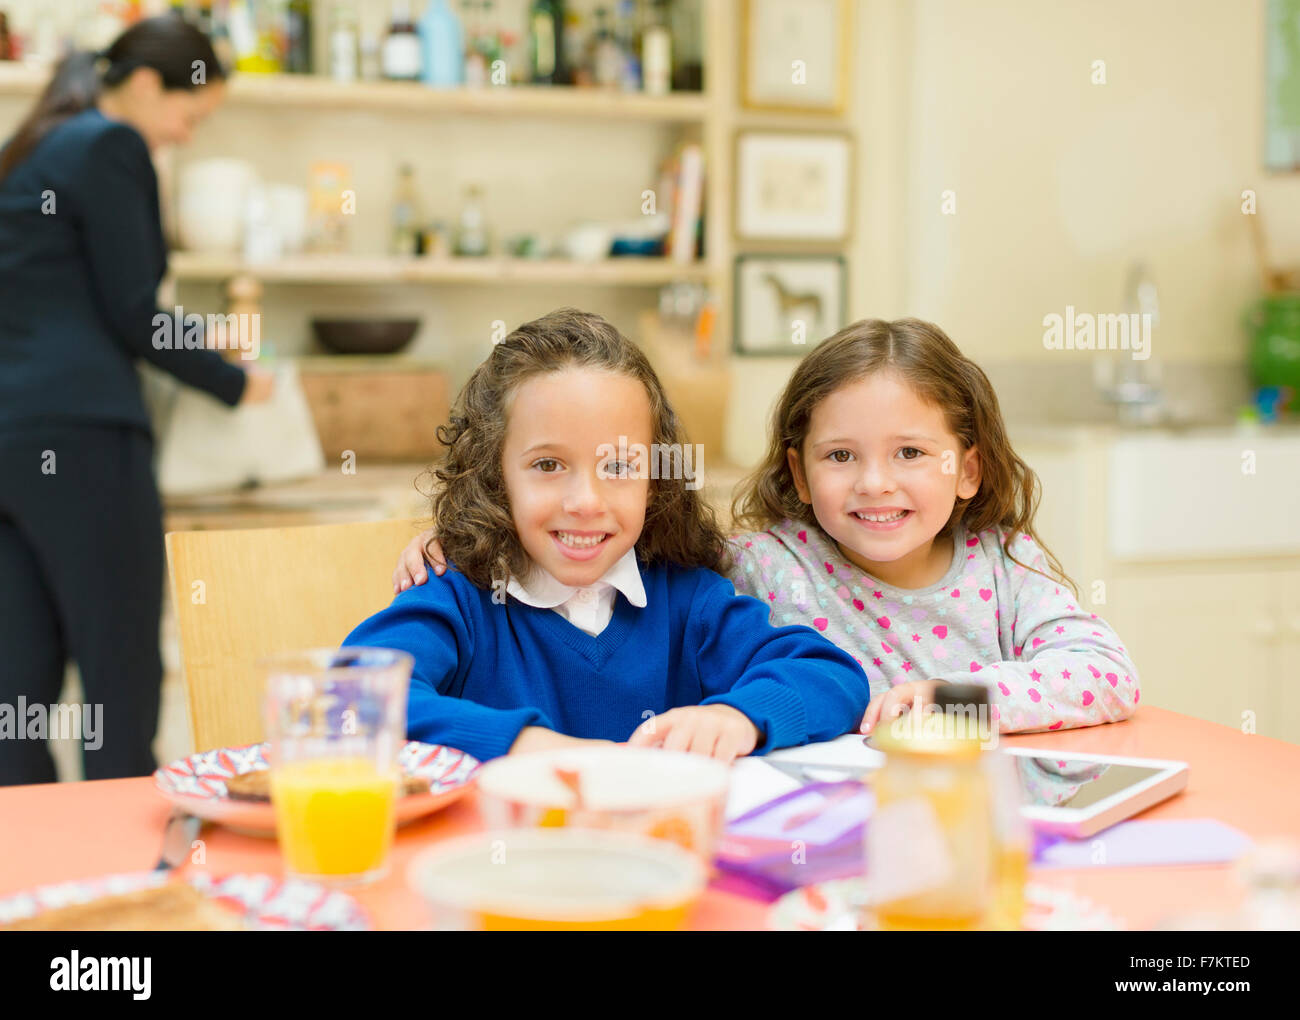 Porträt, Lächeln Schwestern am Frühstückstisch Stockfoto